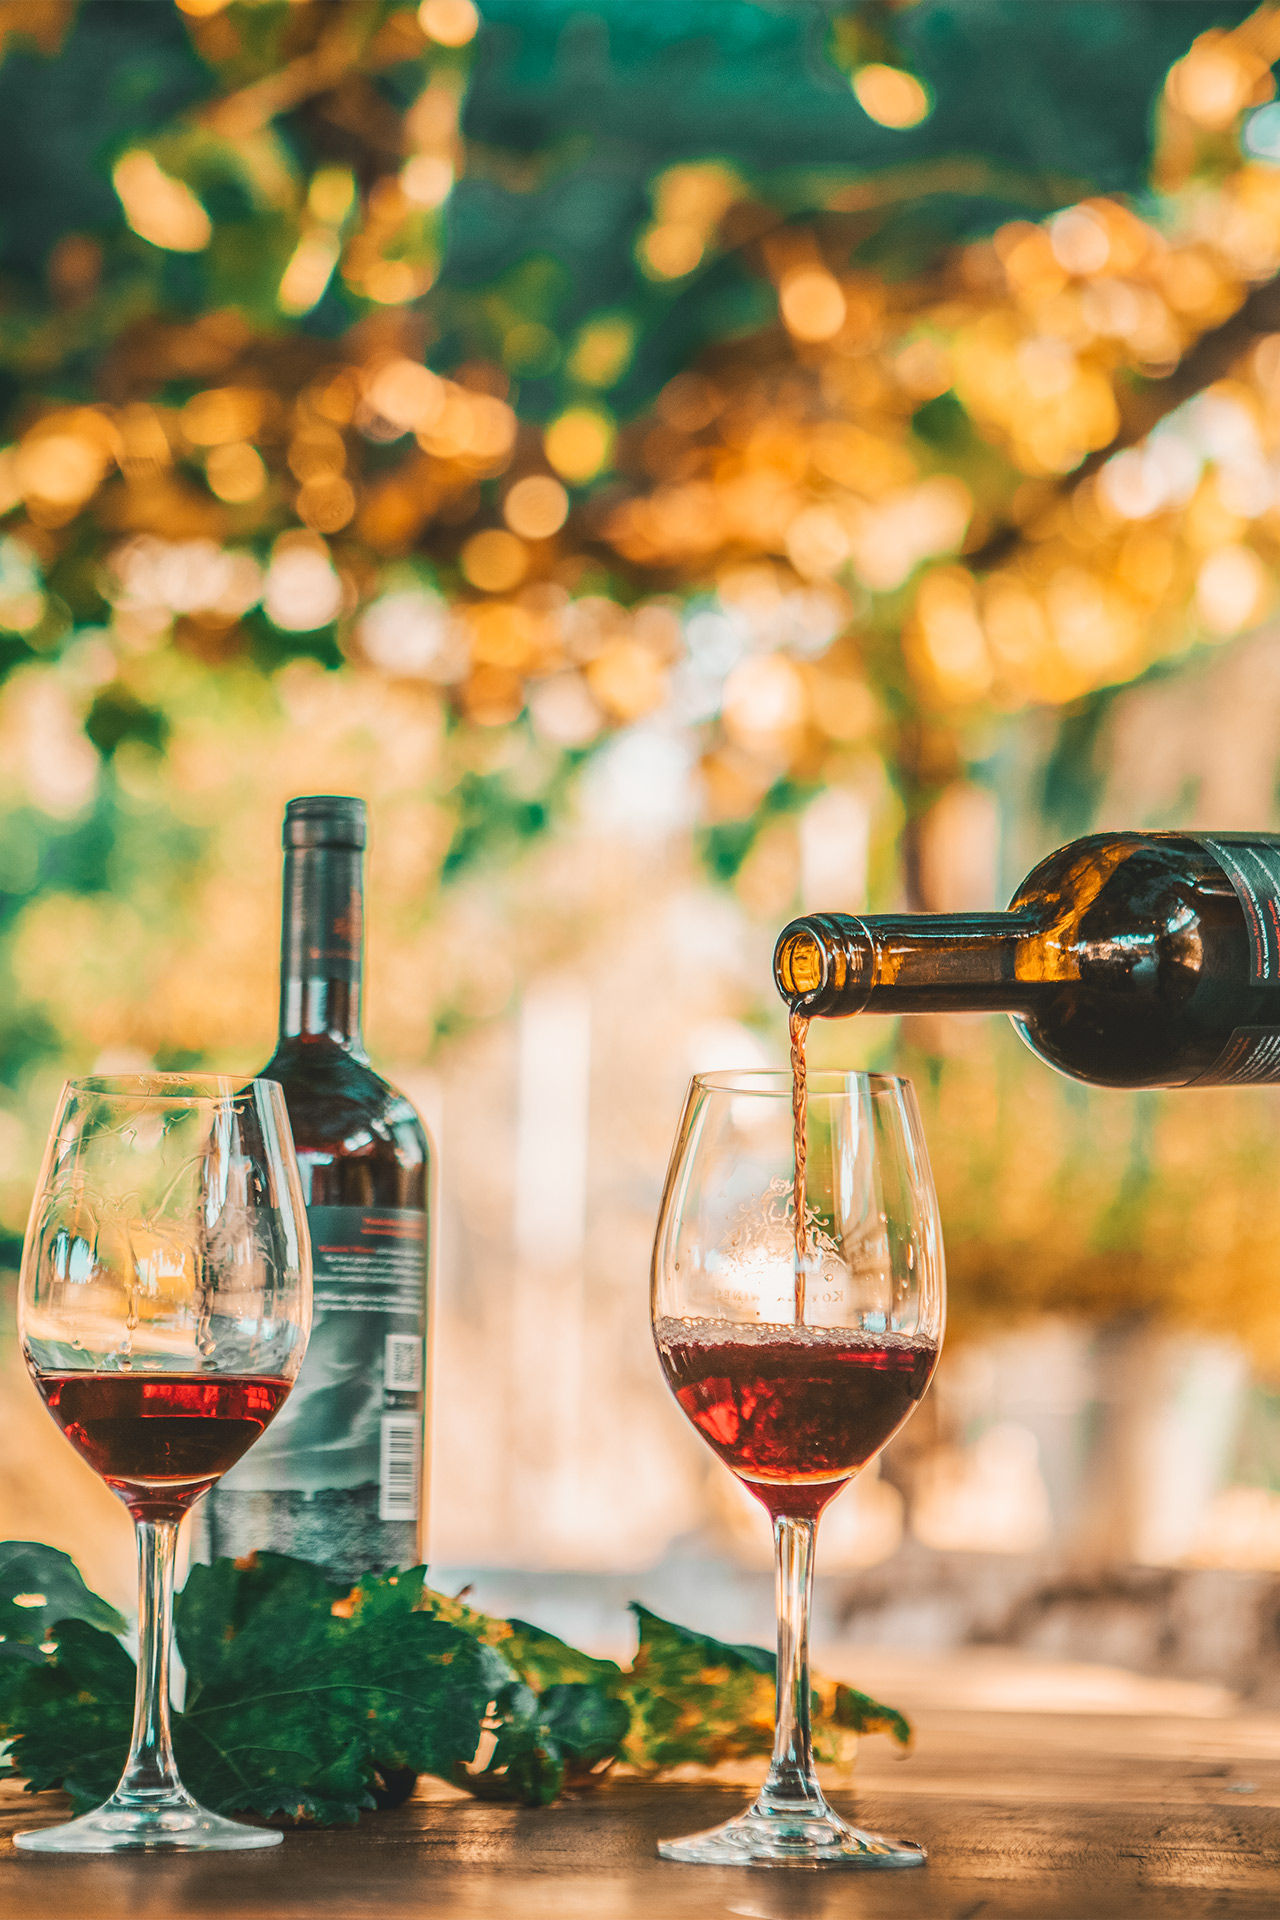 Sample Rhodes' wines in a vineyard